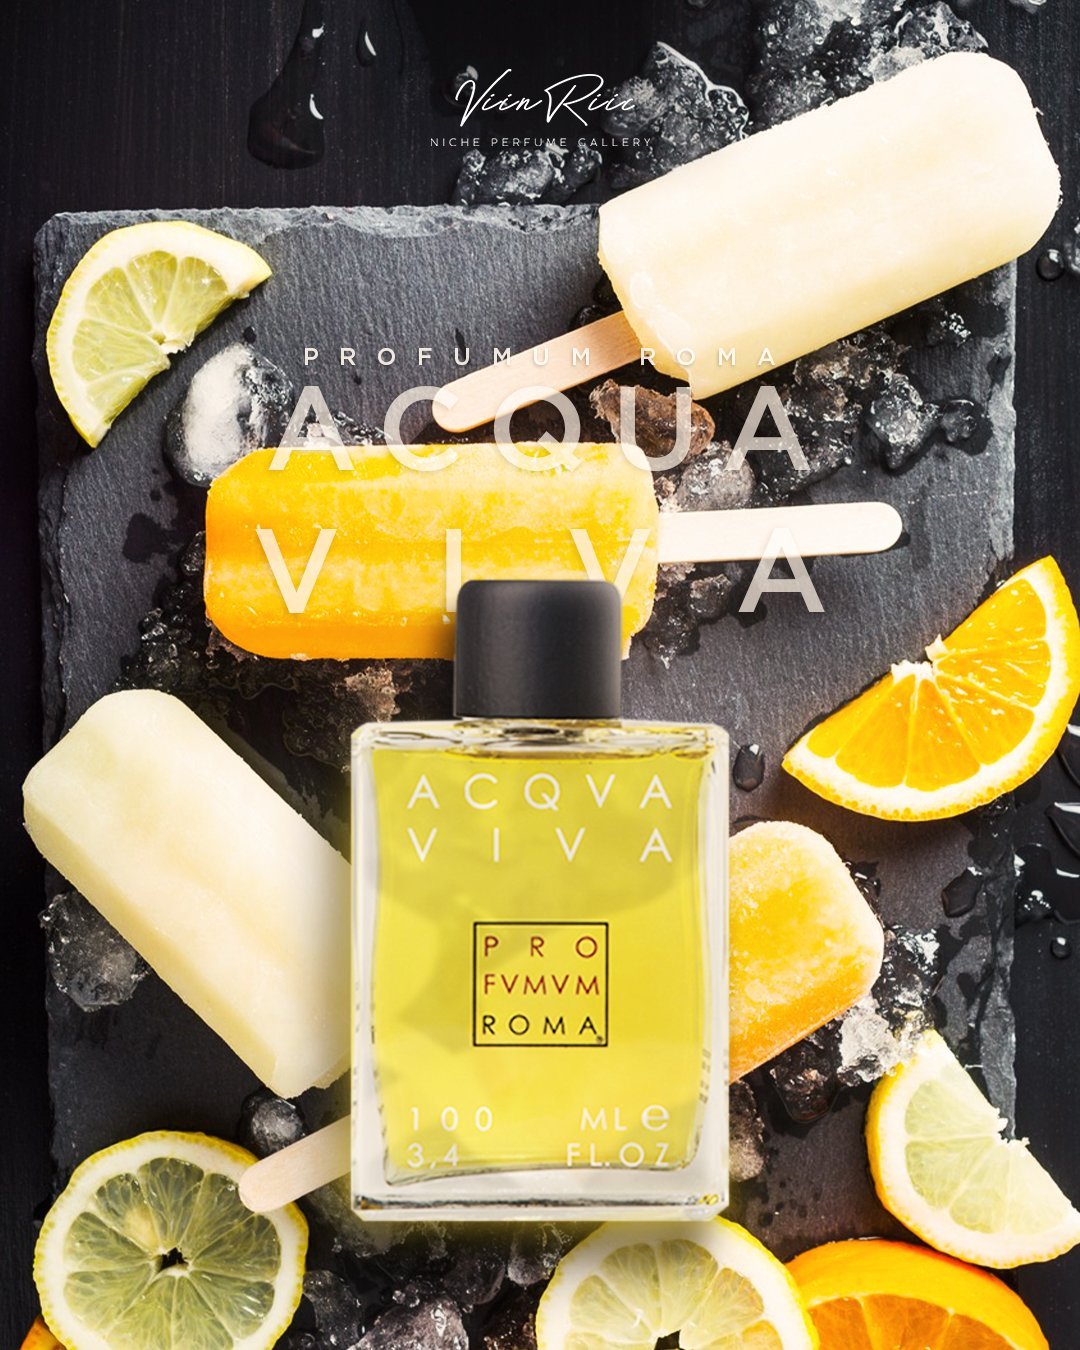 Acqua Viva (Profumum Roma) is both fragrant and rich in vitamin C